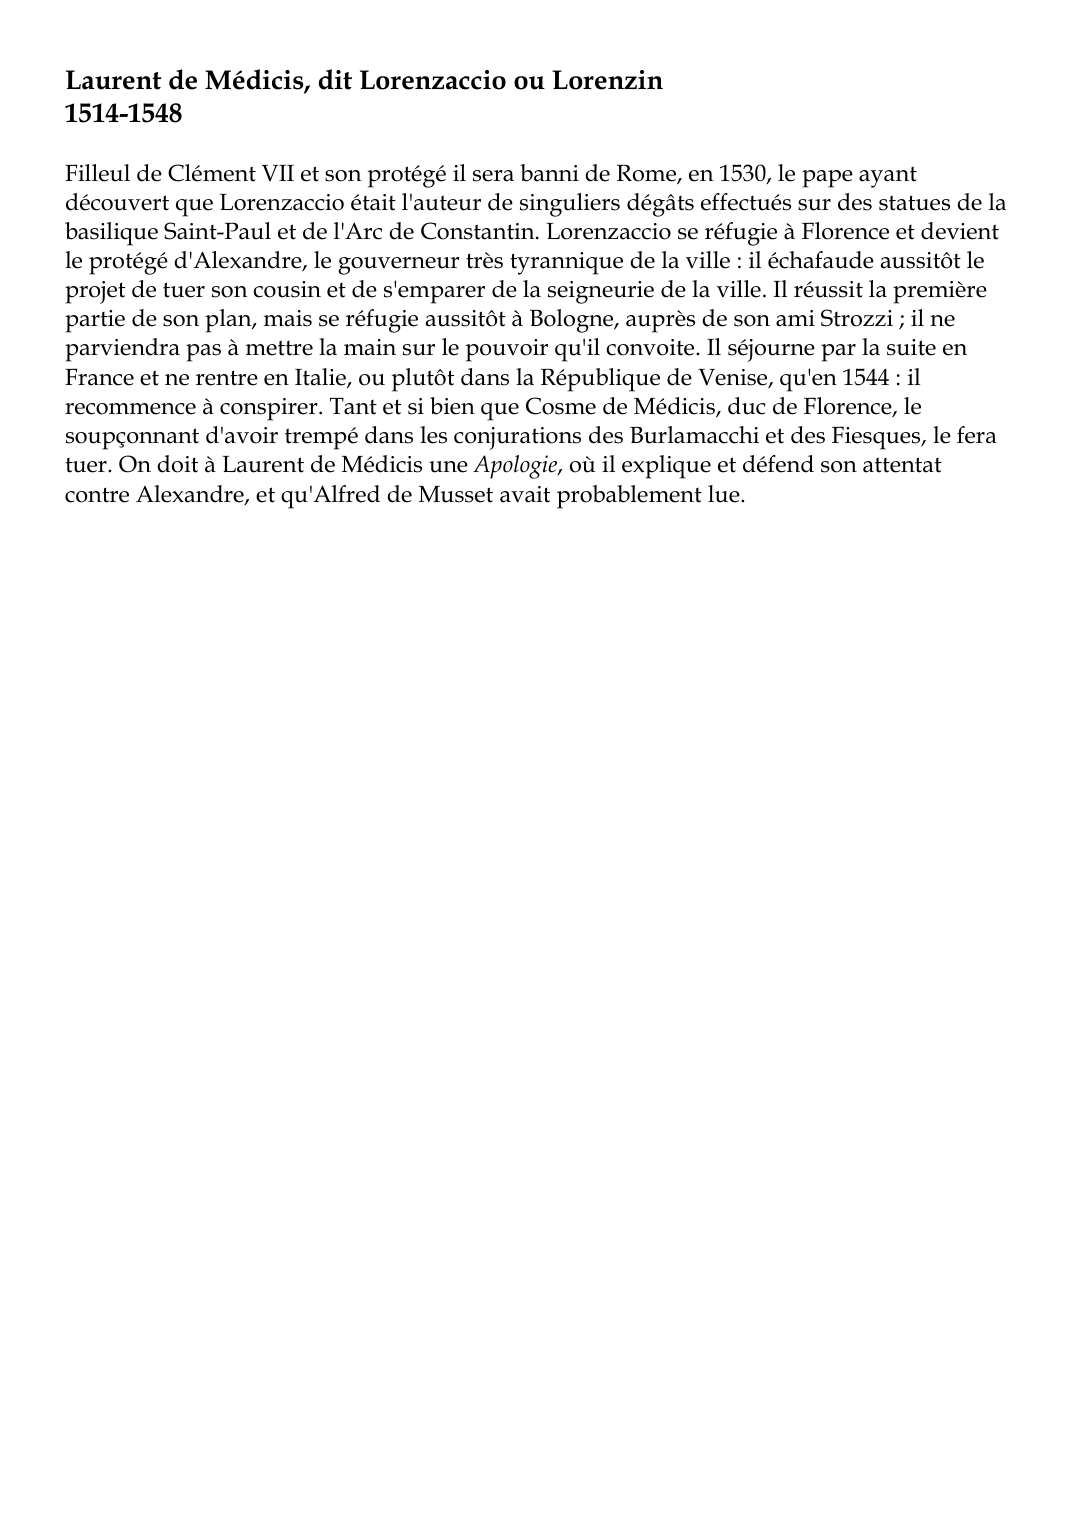 Prévisualisation du document Laurent de Médicis, dit Lorenzaccio ou Lorenzin1514-1548Filleul de Clément VII et son protégé il sera banni de Rome, en 1530, le pape ayantdécouvert que Lorenzaccio était l'auteur de singuliers dégâts effectués sur des statues de labasilique Saint-Paul et de l'Arc de Constantin.